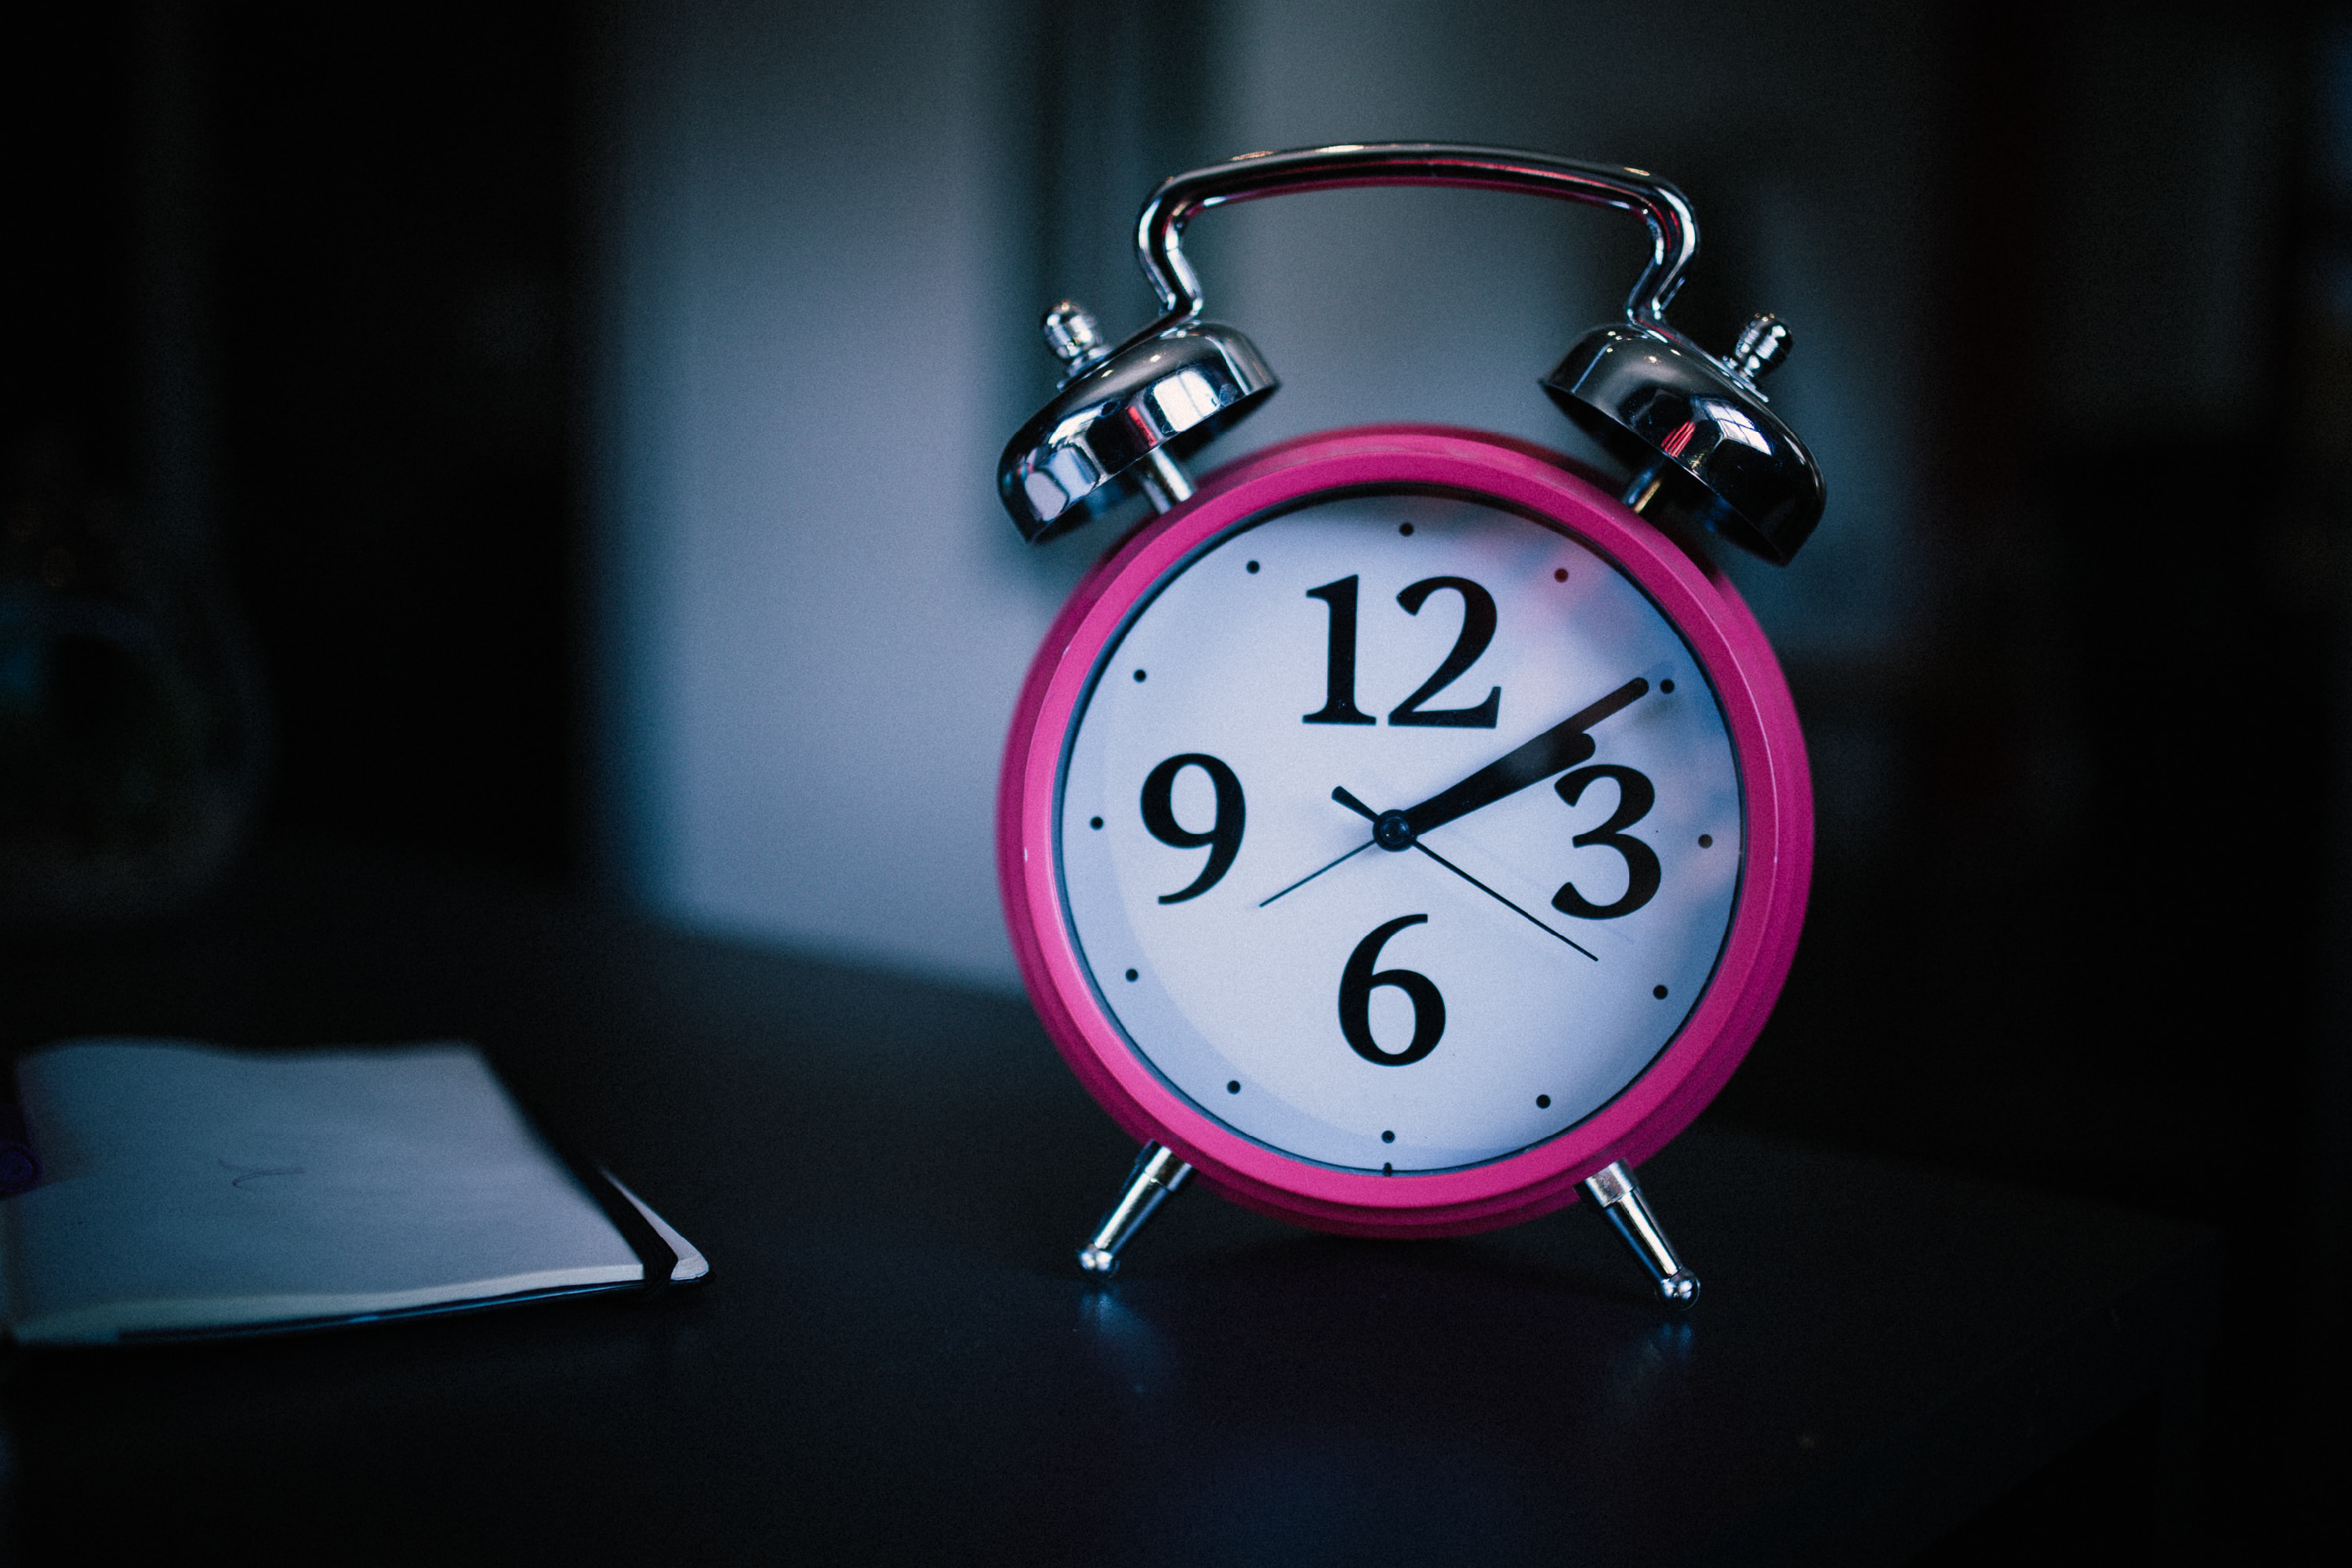 Em uma mesa de cabeceira há um relógio despertador rosa, com os números 3, 6, 9 e 12